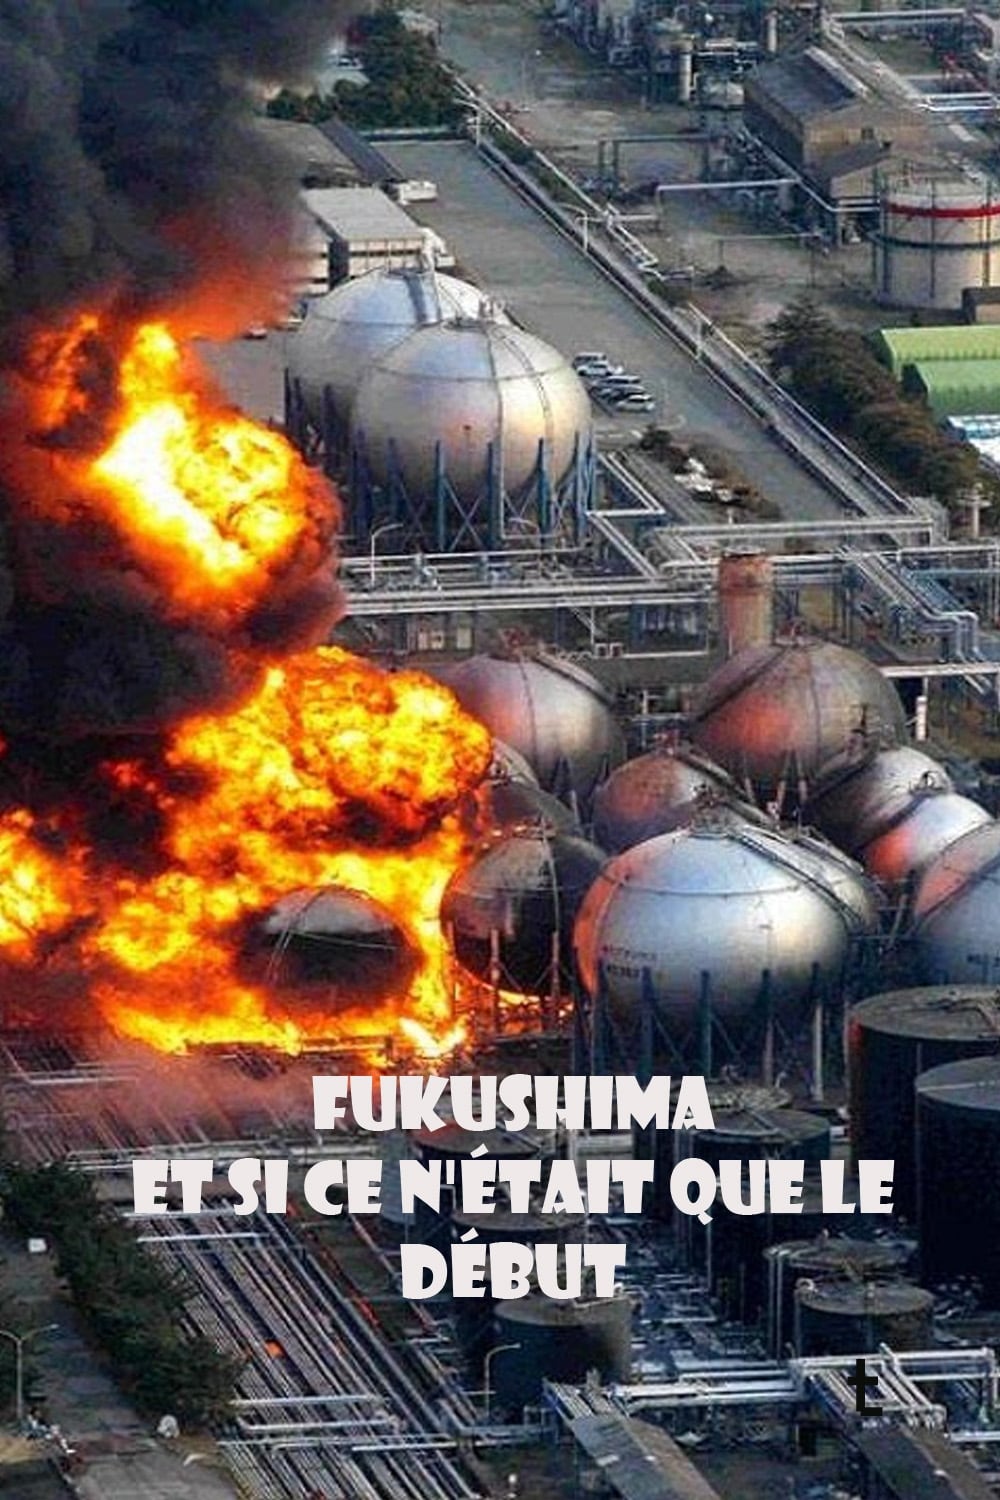 Fukushima, et si ce n'était que le début (2011)